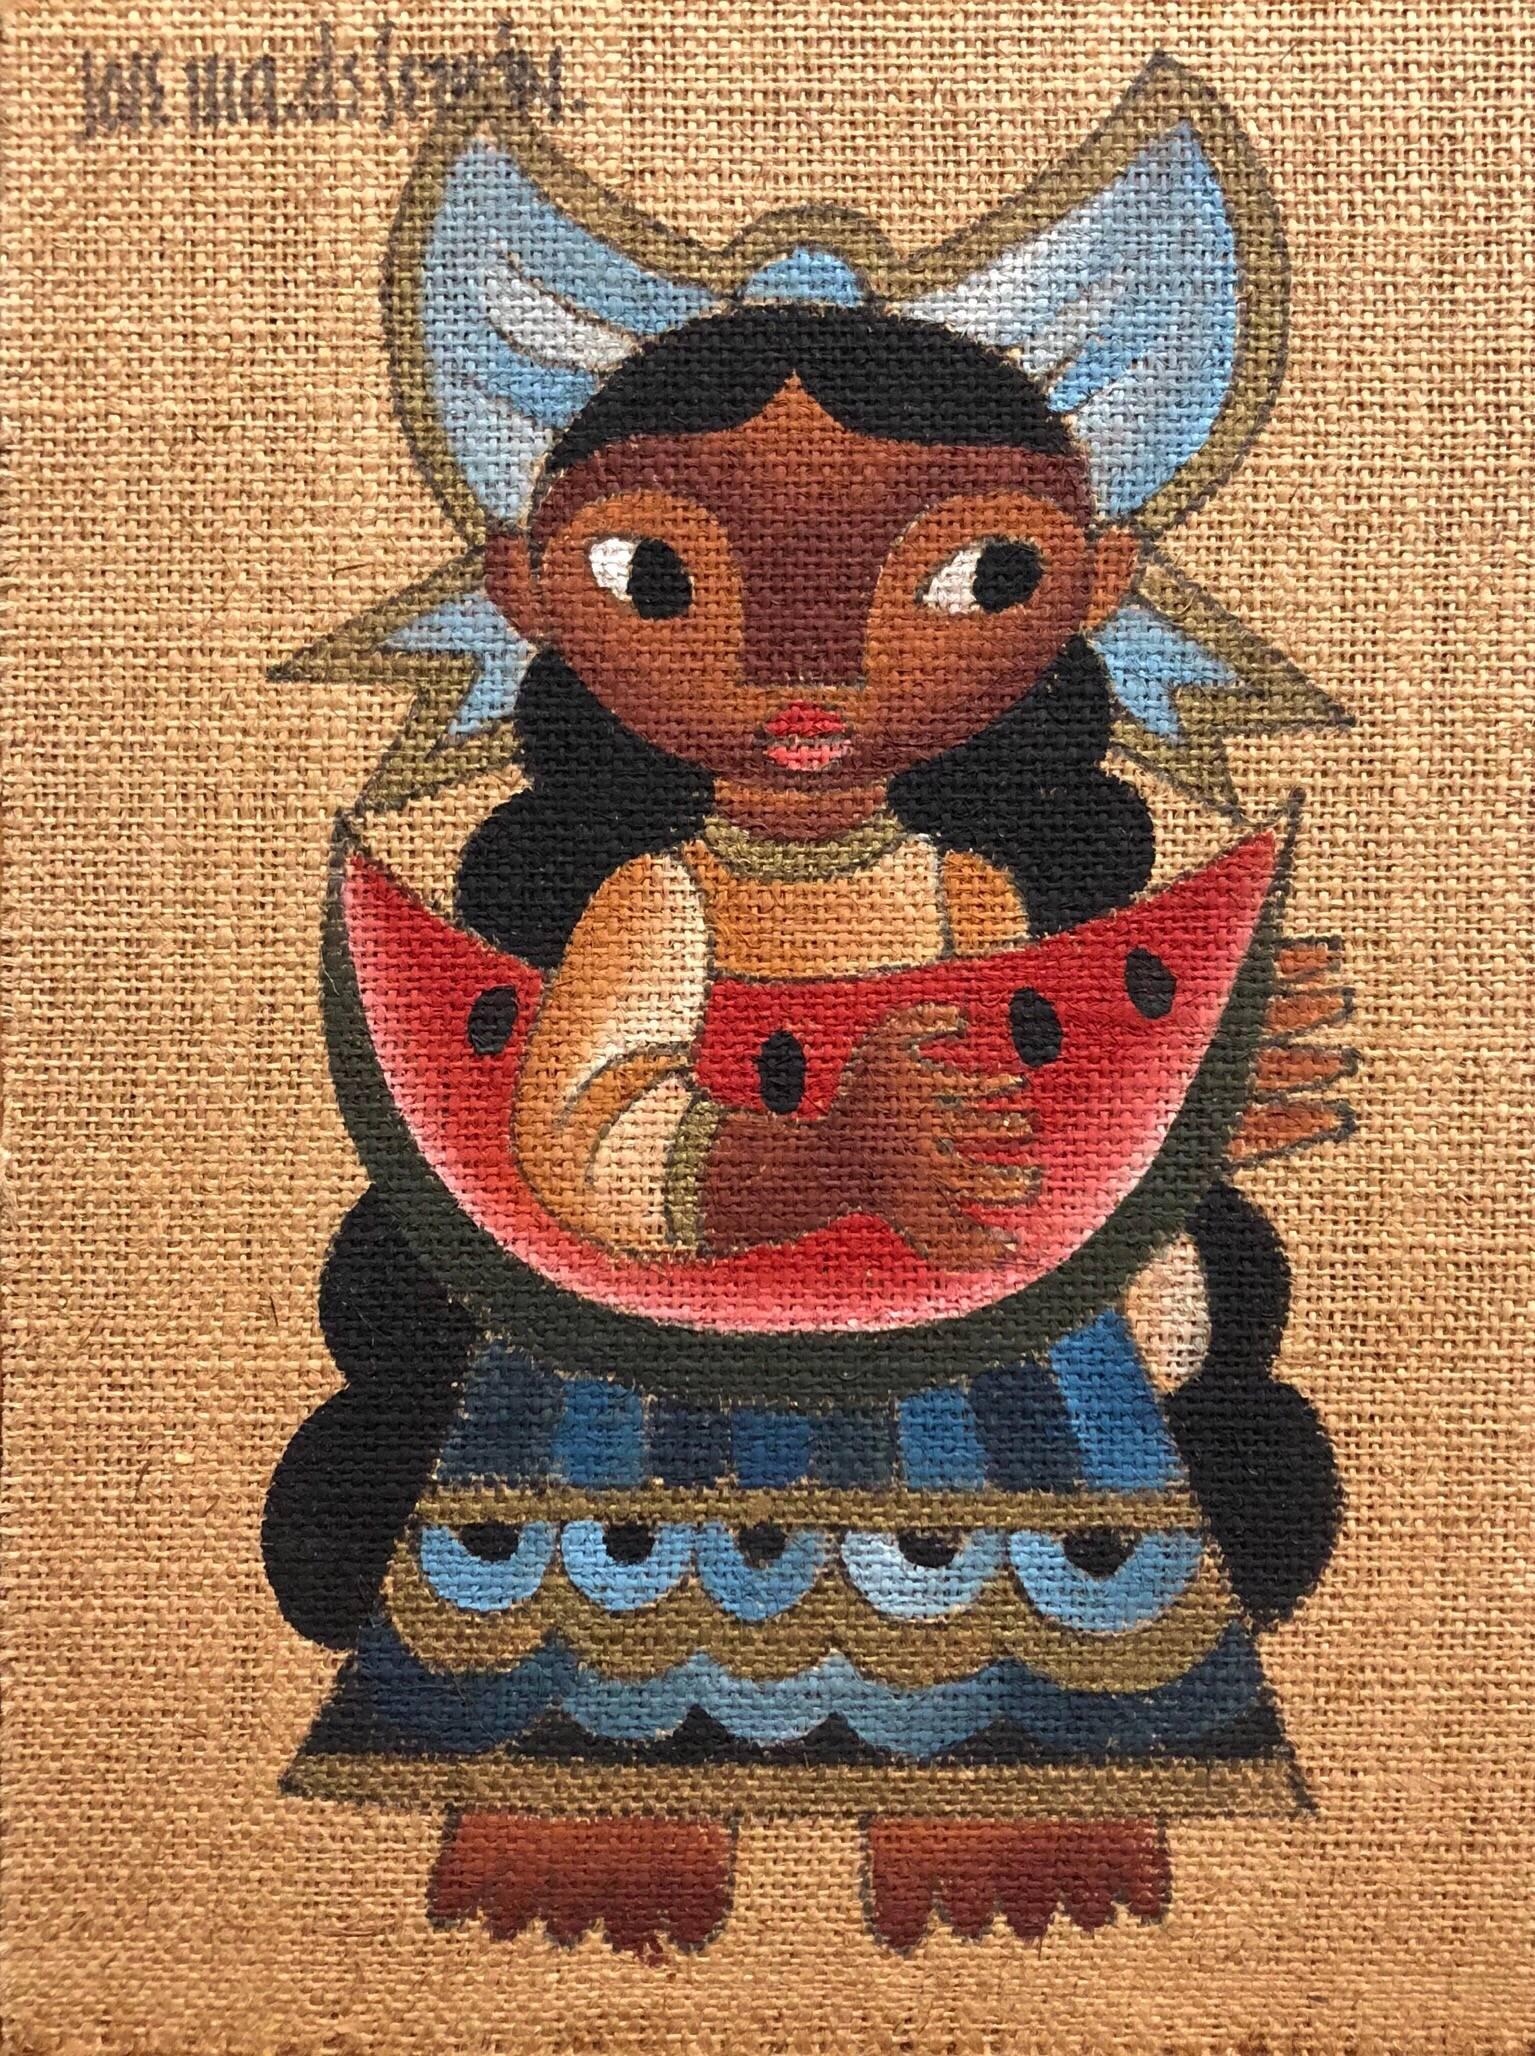 Folk Art Mexikanisches Mädchen mit Wassermelone Ölgemälde auf Sackleinen – Painting von Jose Maria de Servin